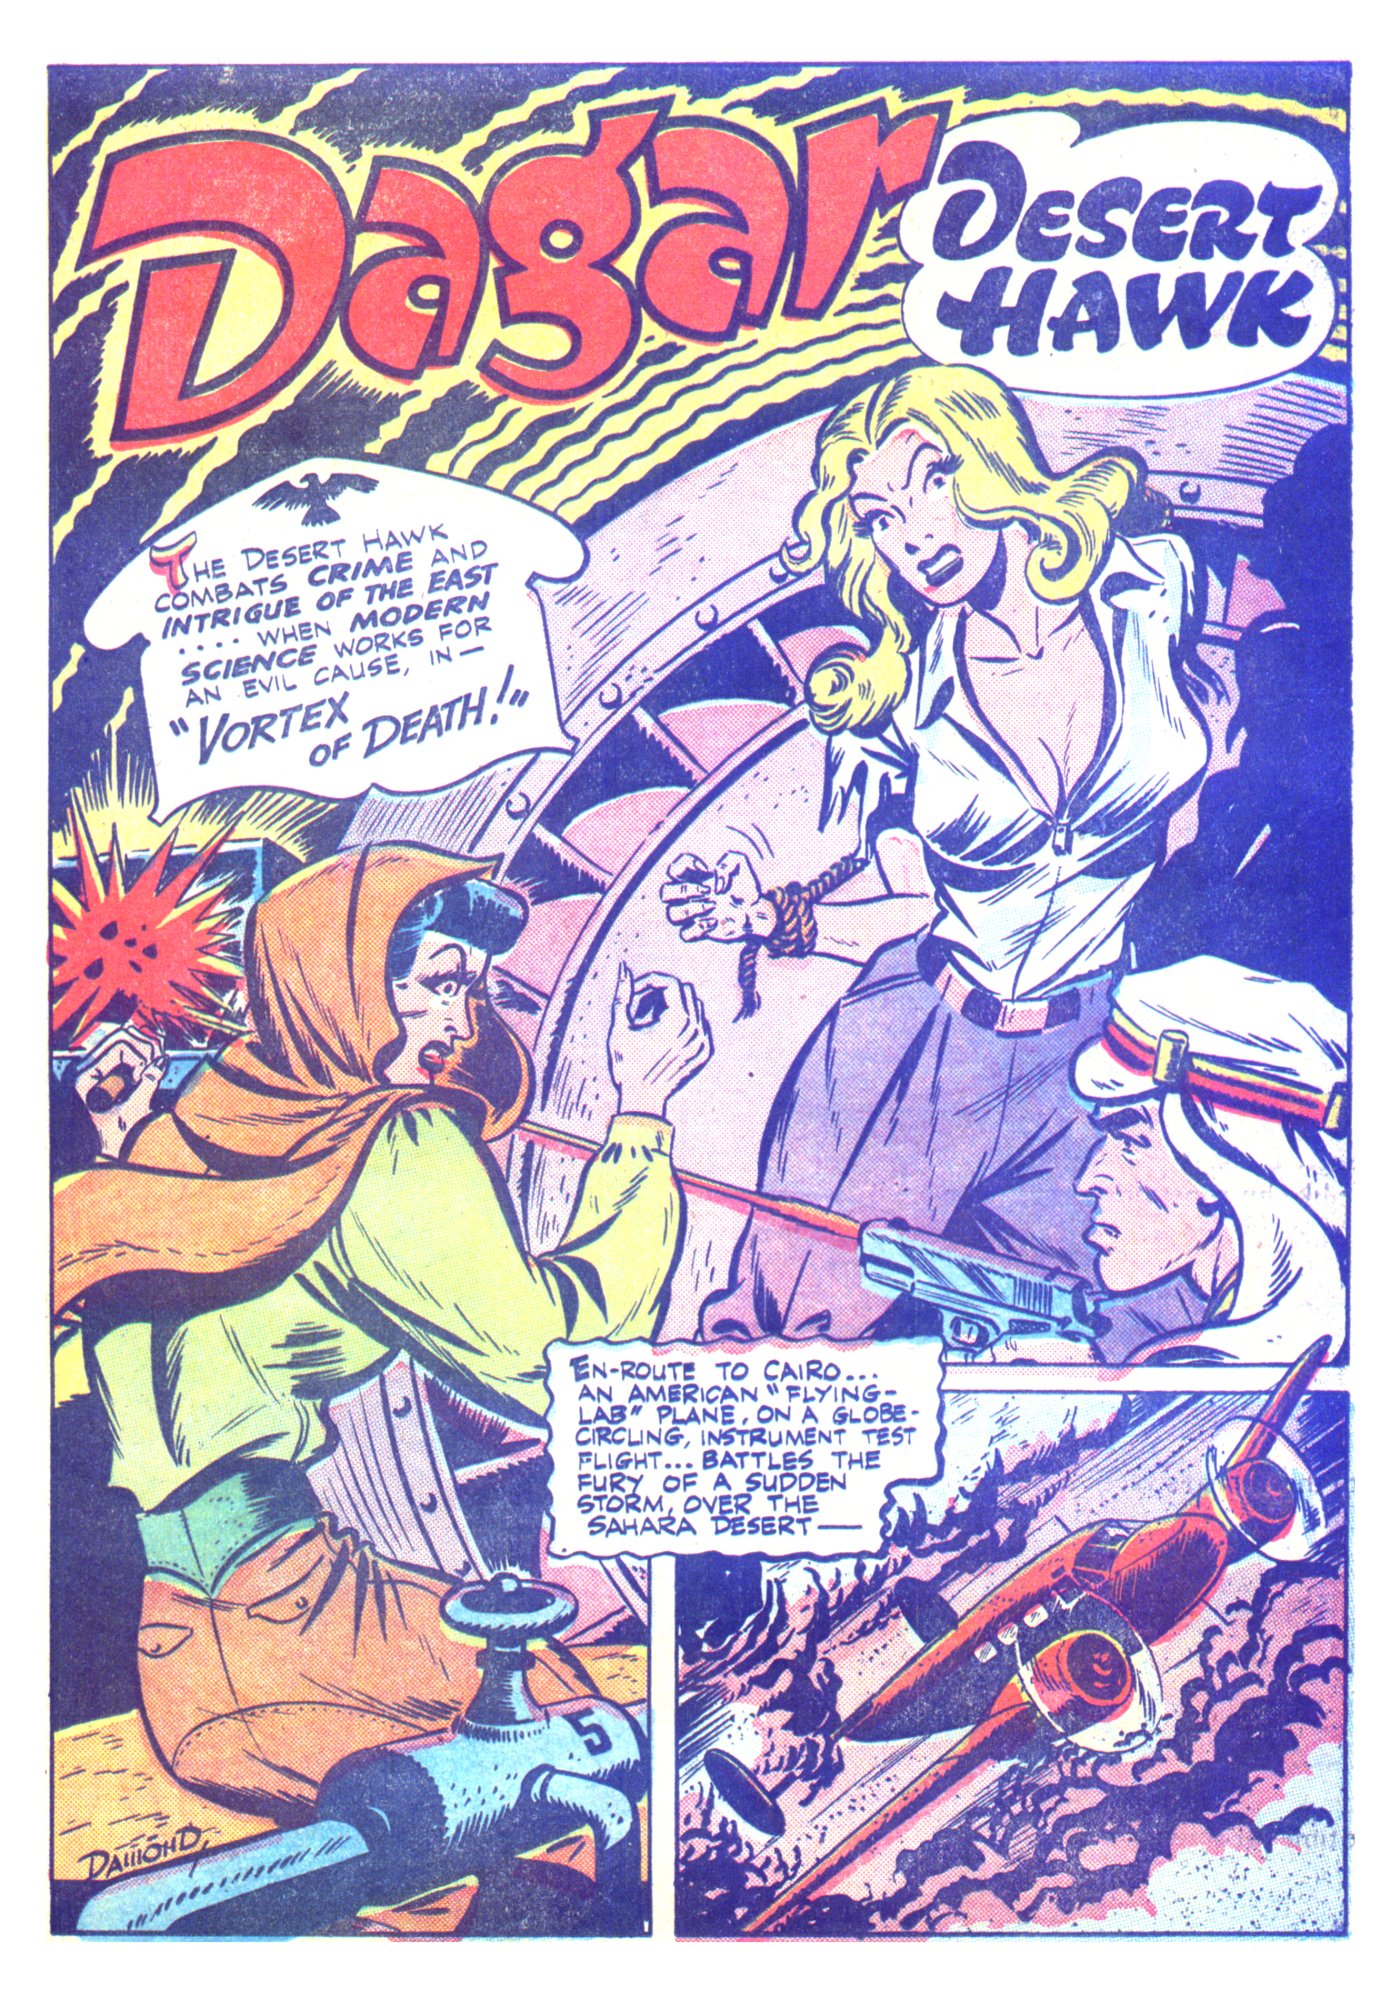 Read online Dagar Desert Hawk comic -  Issue #15 - 15